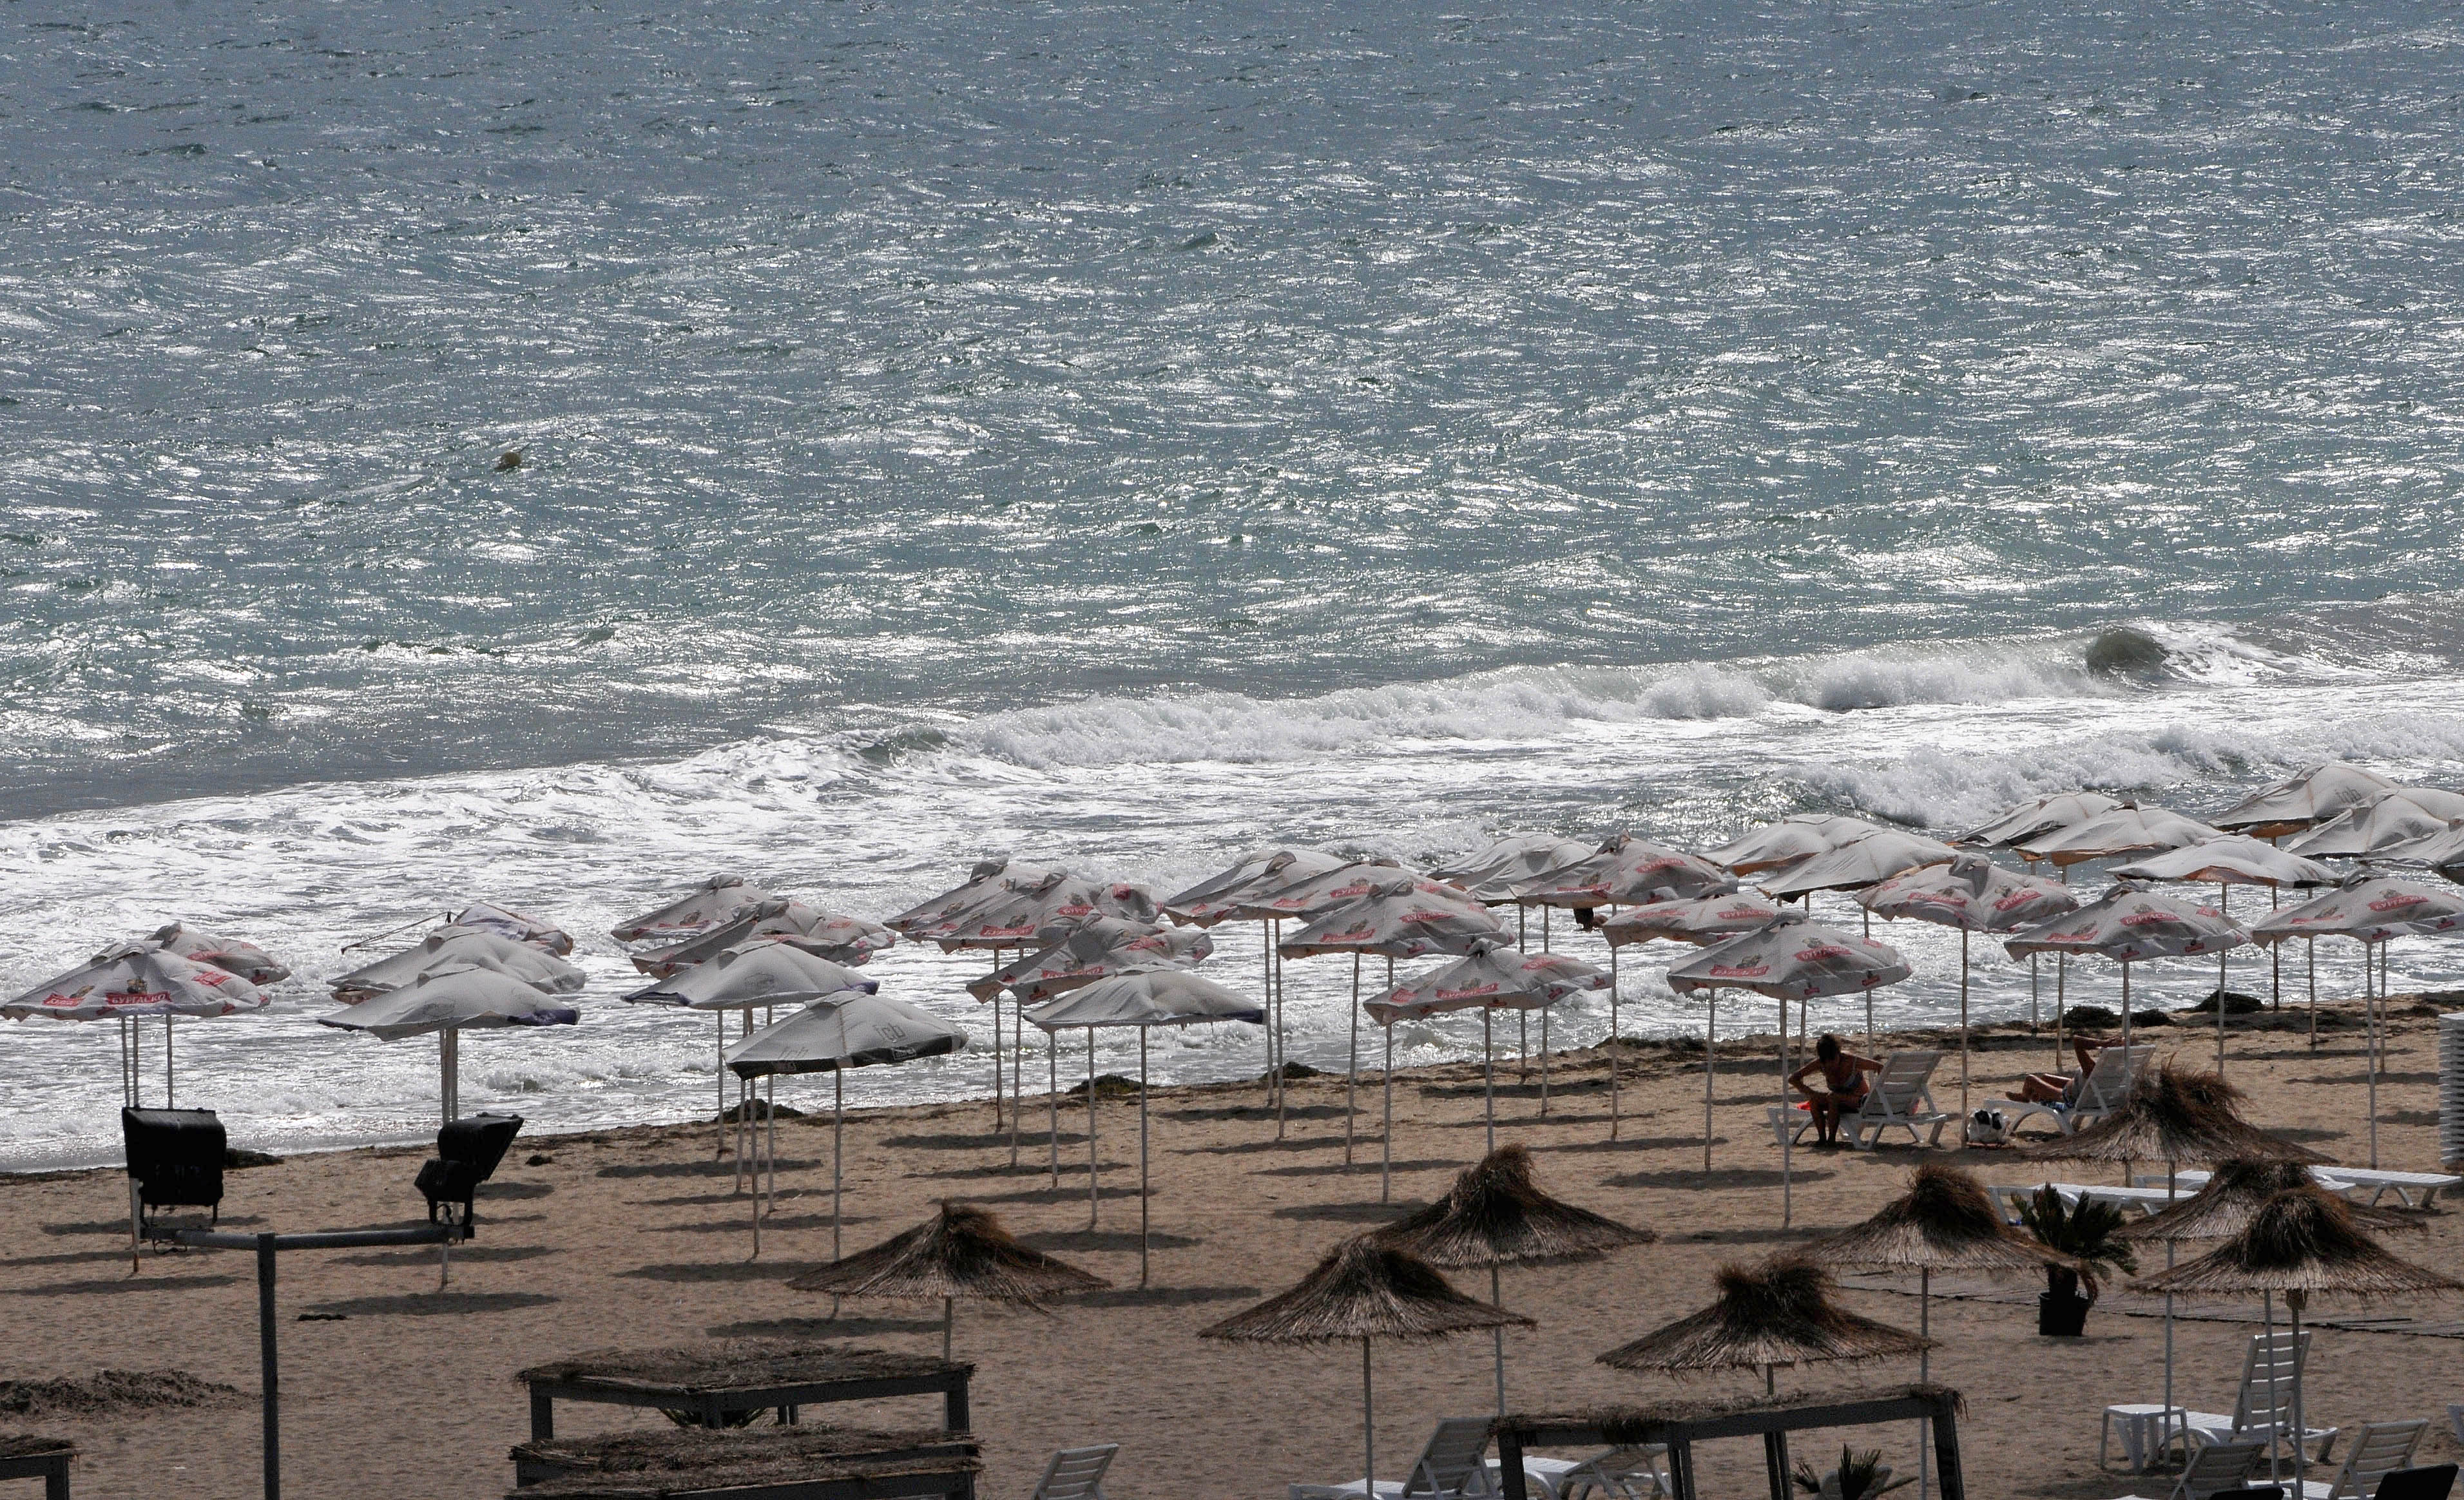 В края на летния сезон плажовете по родното Черноморие опустяха. Променливото време и силното вълнение на морето отказаха плажуващите от морския бряг в Бургас и Варна.